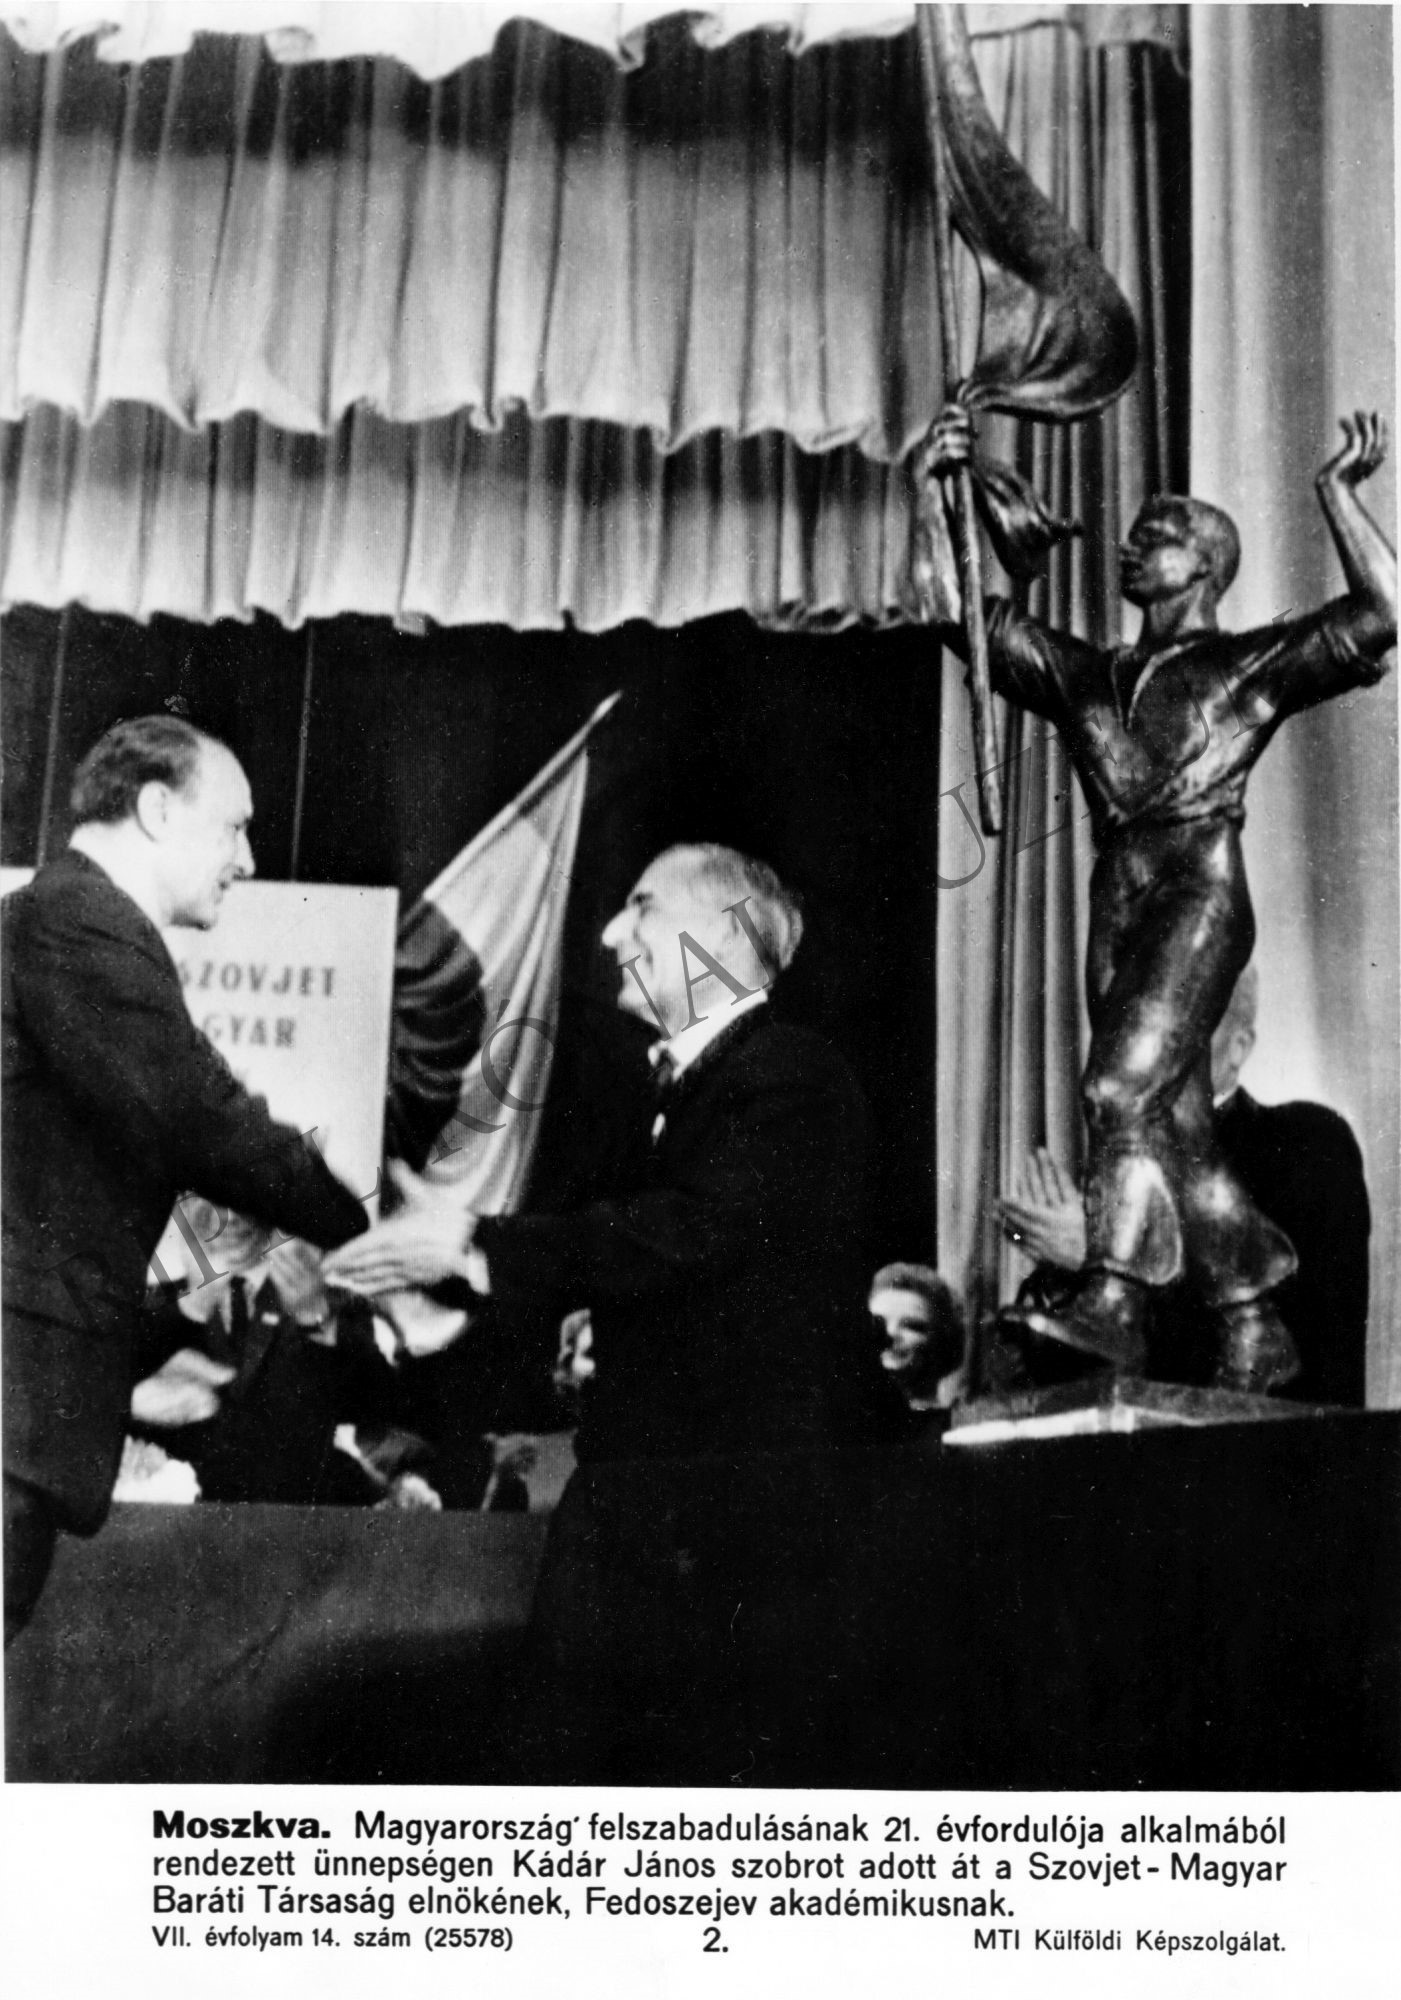 Magyarország felszabadulásának 21. évfordulója alkalmából Kádár János szobrot adott át a Szovjet-Magyar Baráti Társaság elnökének, Fedoszejev akadémikusnak (Rippl-Rónai Múzeum CC BY-NC-SA)